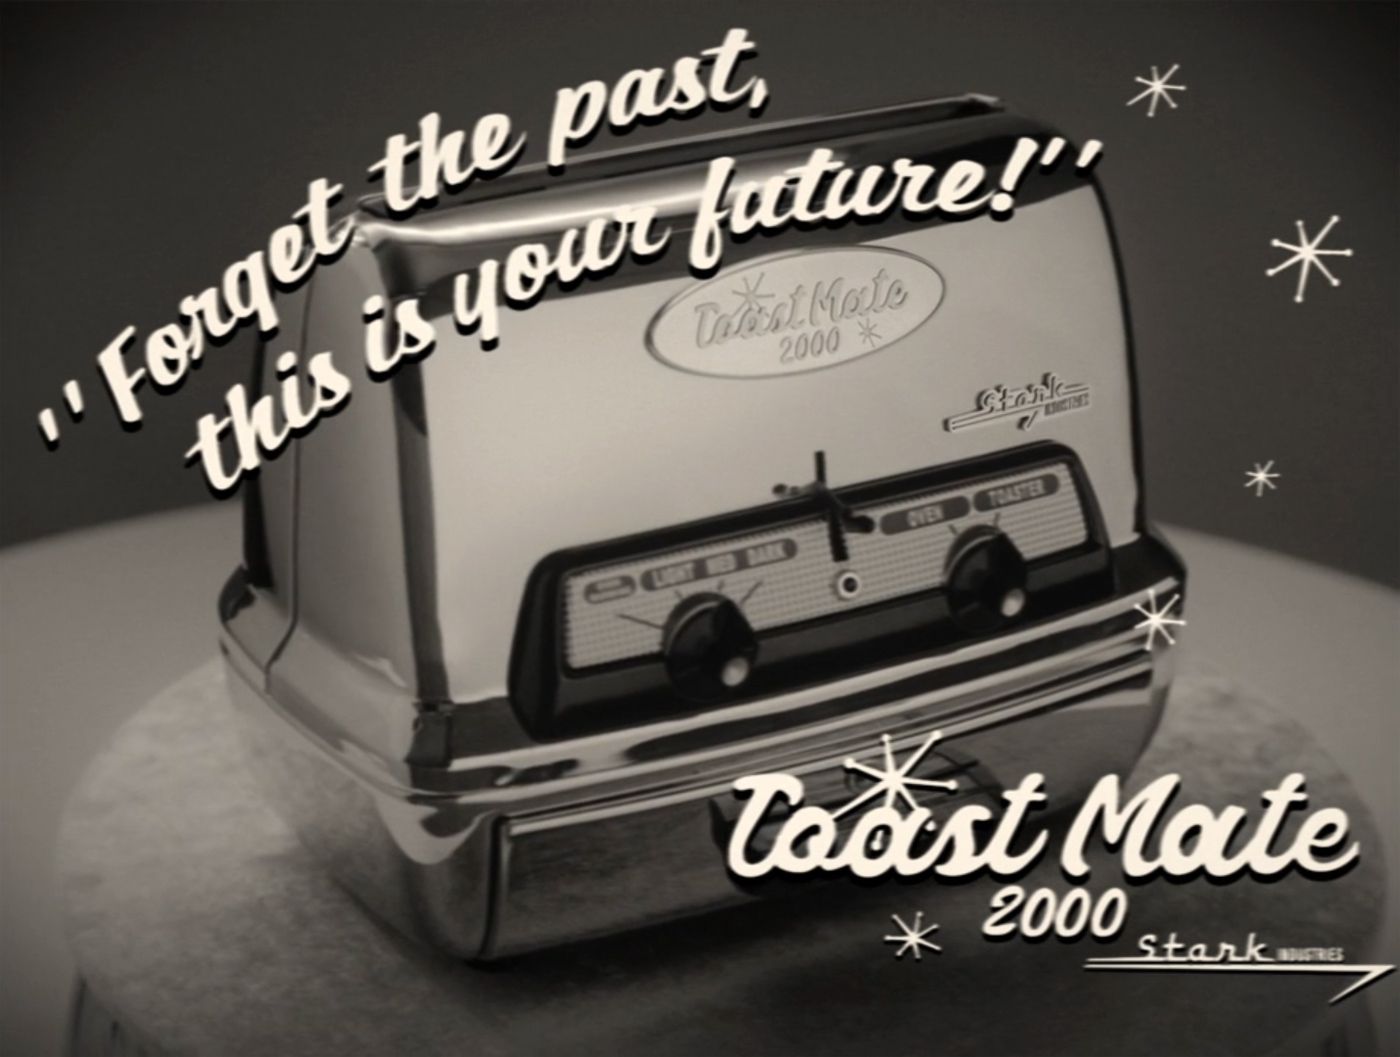 WandaVision Toast Mate 2000 ad